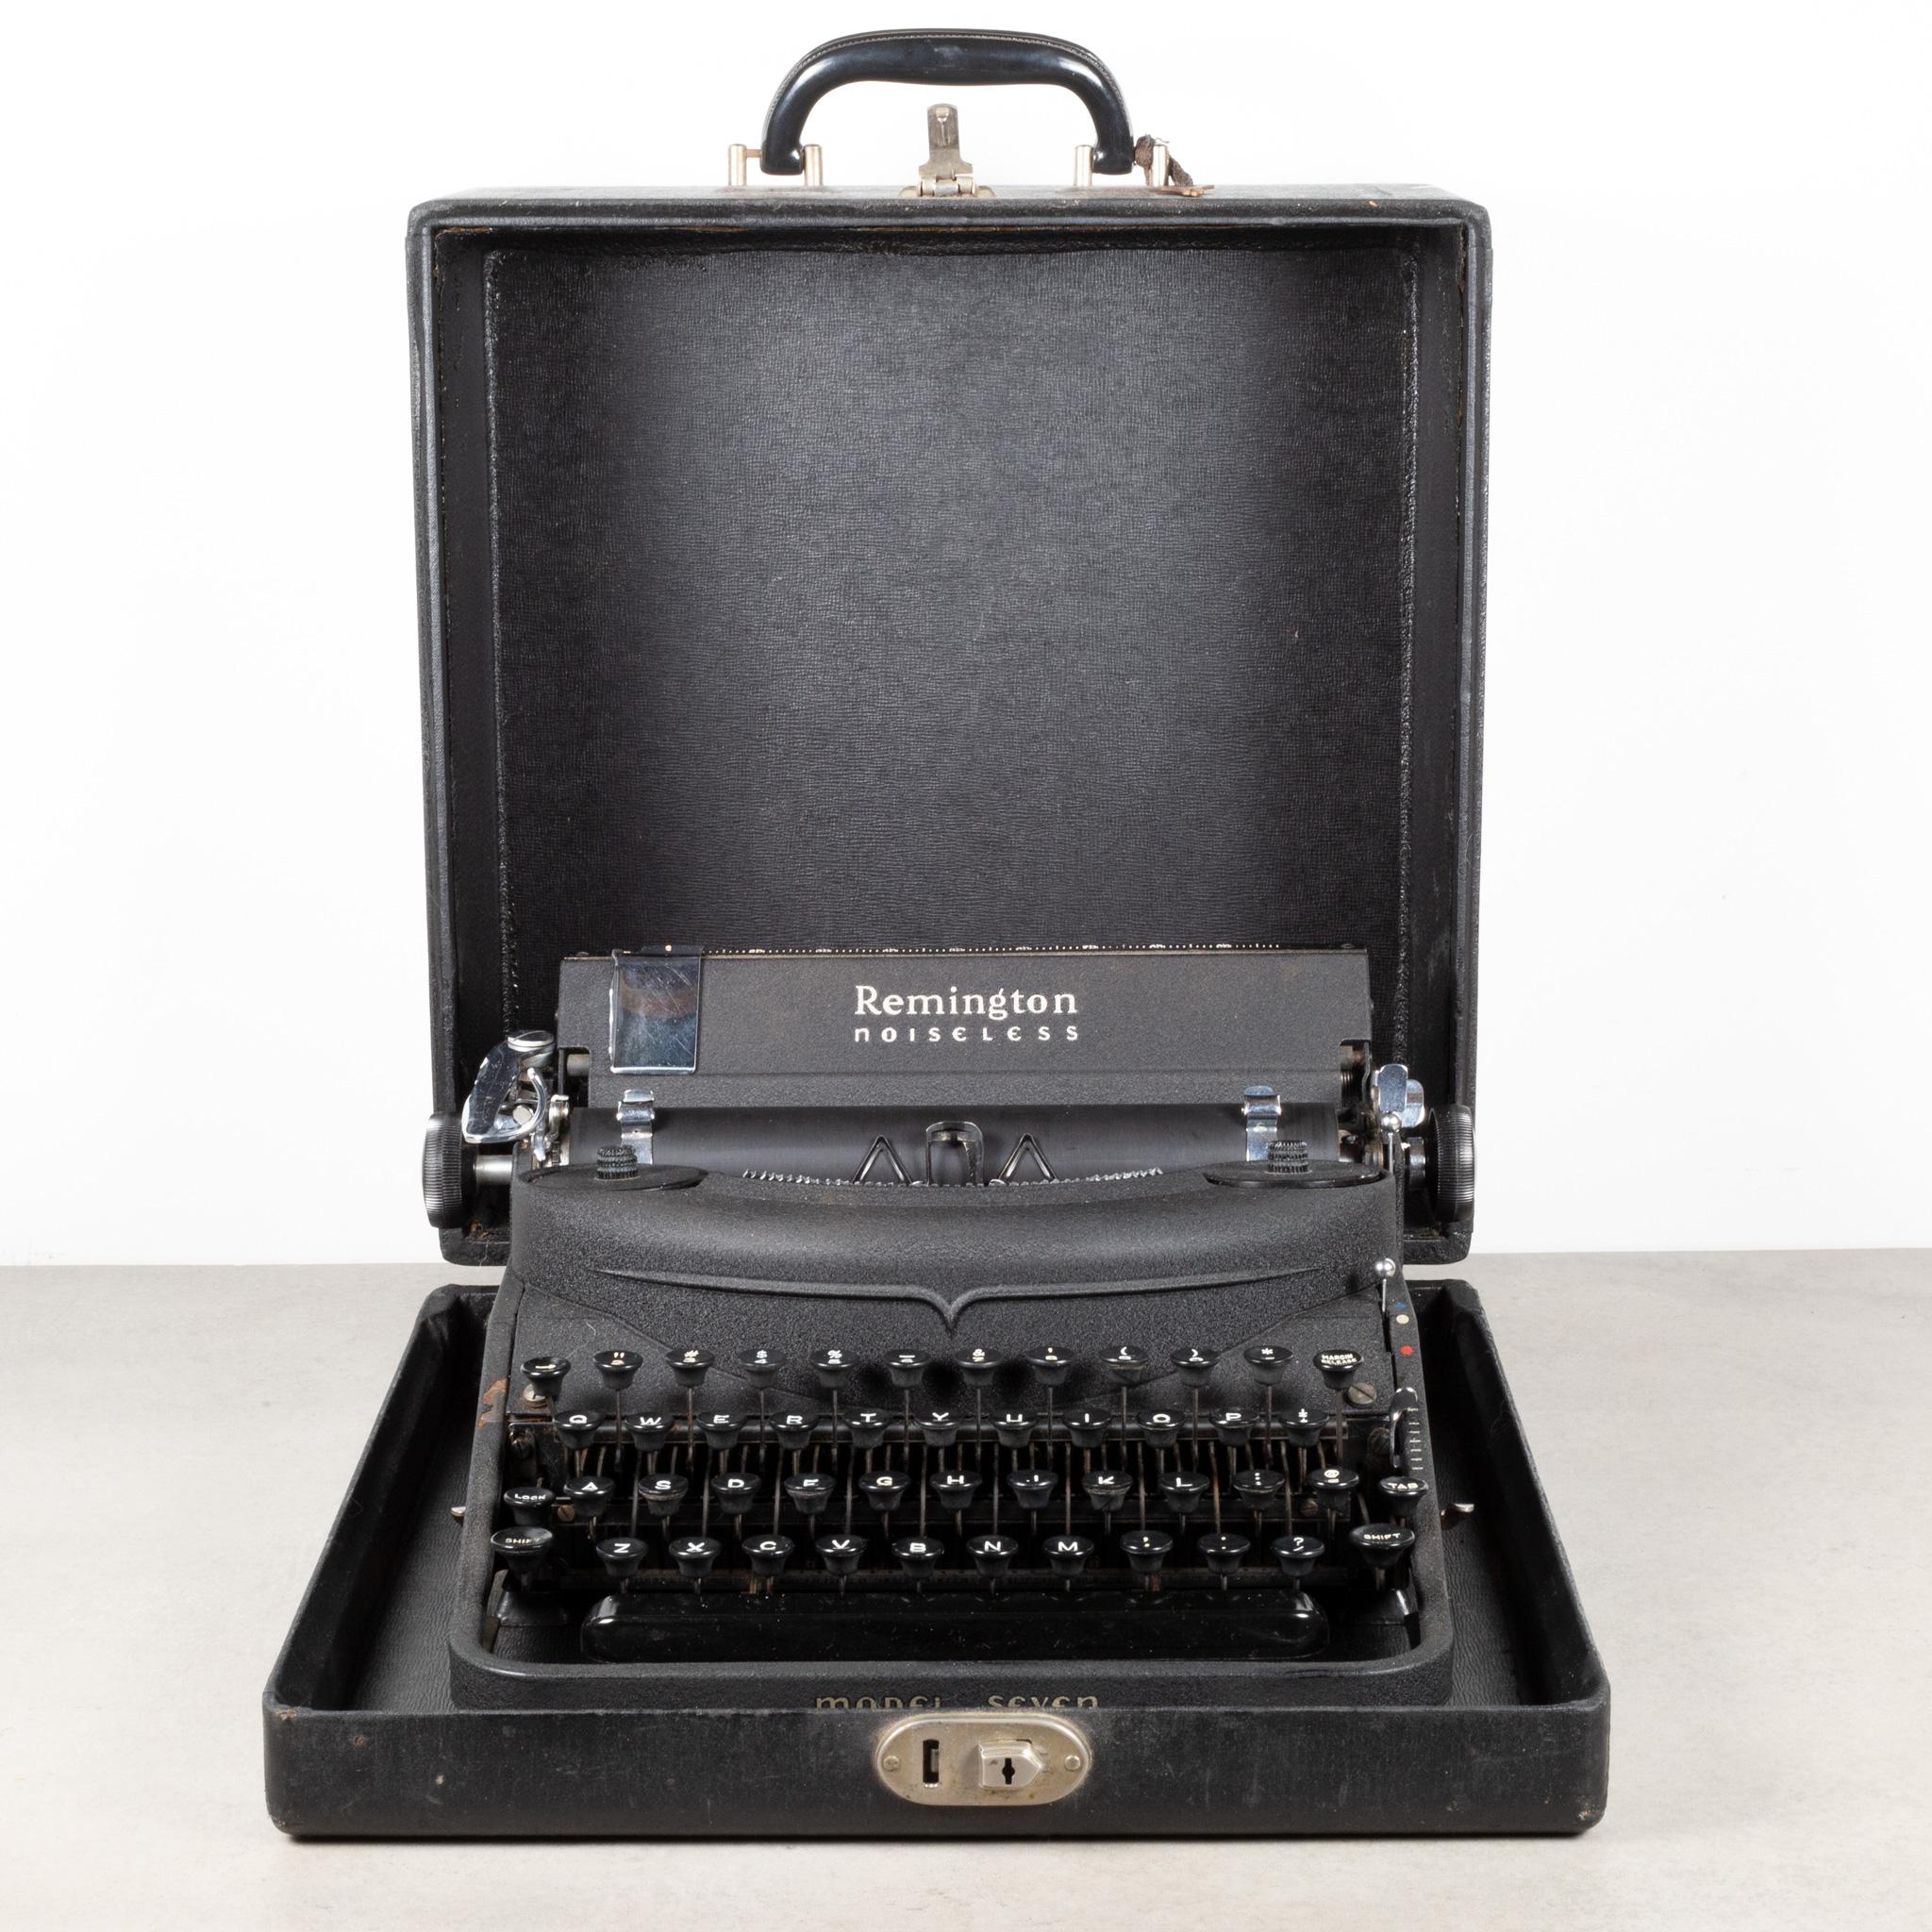 À PROPOS DE

Une machine à écrire portable Remington Rand Noiseless d'origine avec une finition noire froissée et un étui d'origine. Cette machine à écrire est très propre. La frappe est fluide et le chariot avance et fonctionne très bien. Le